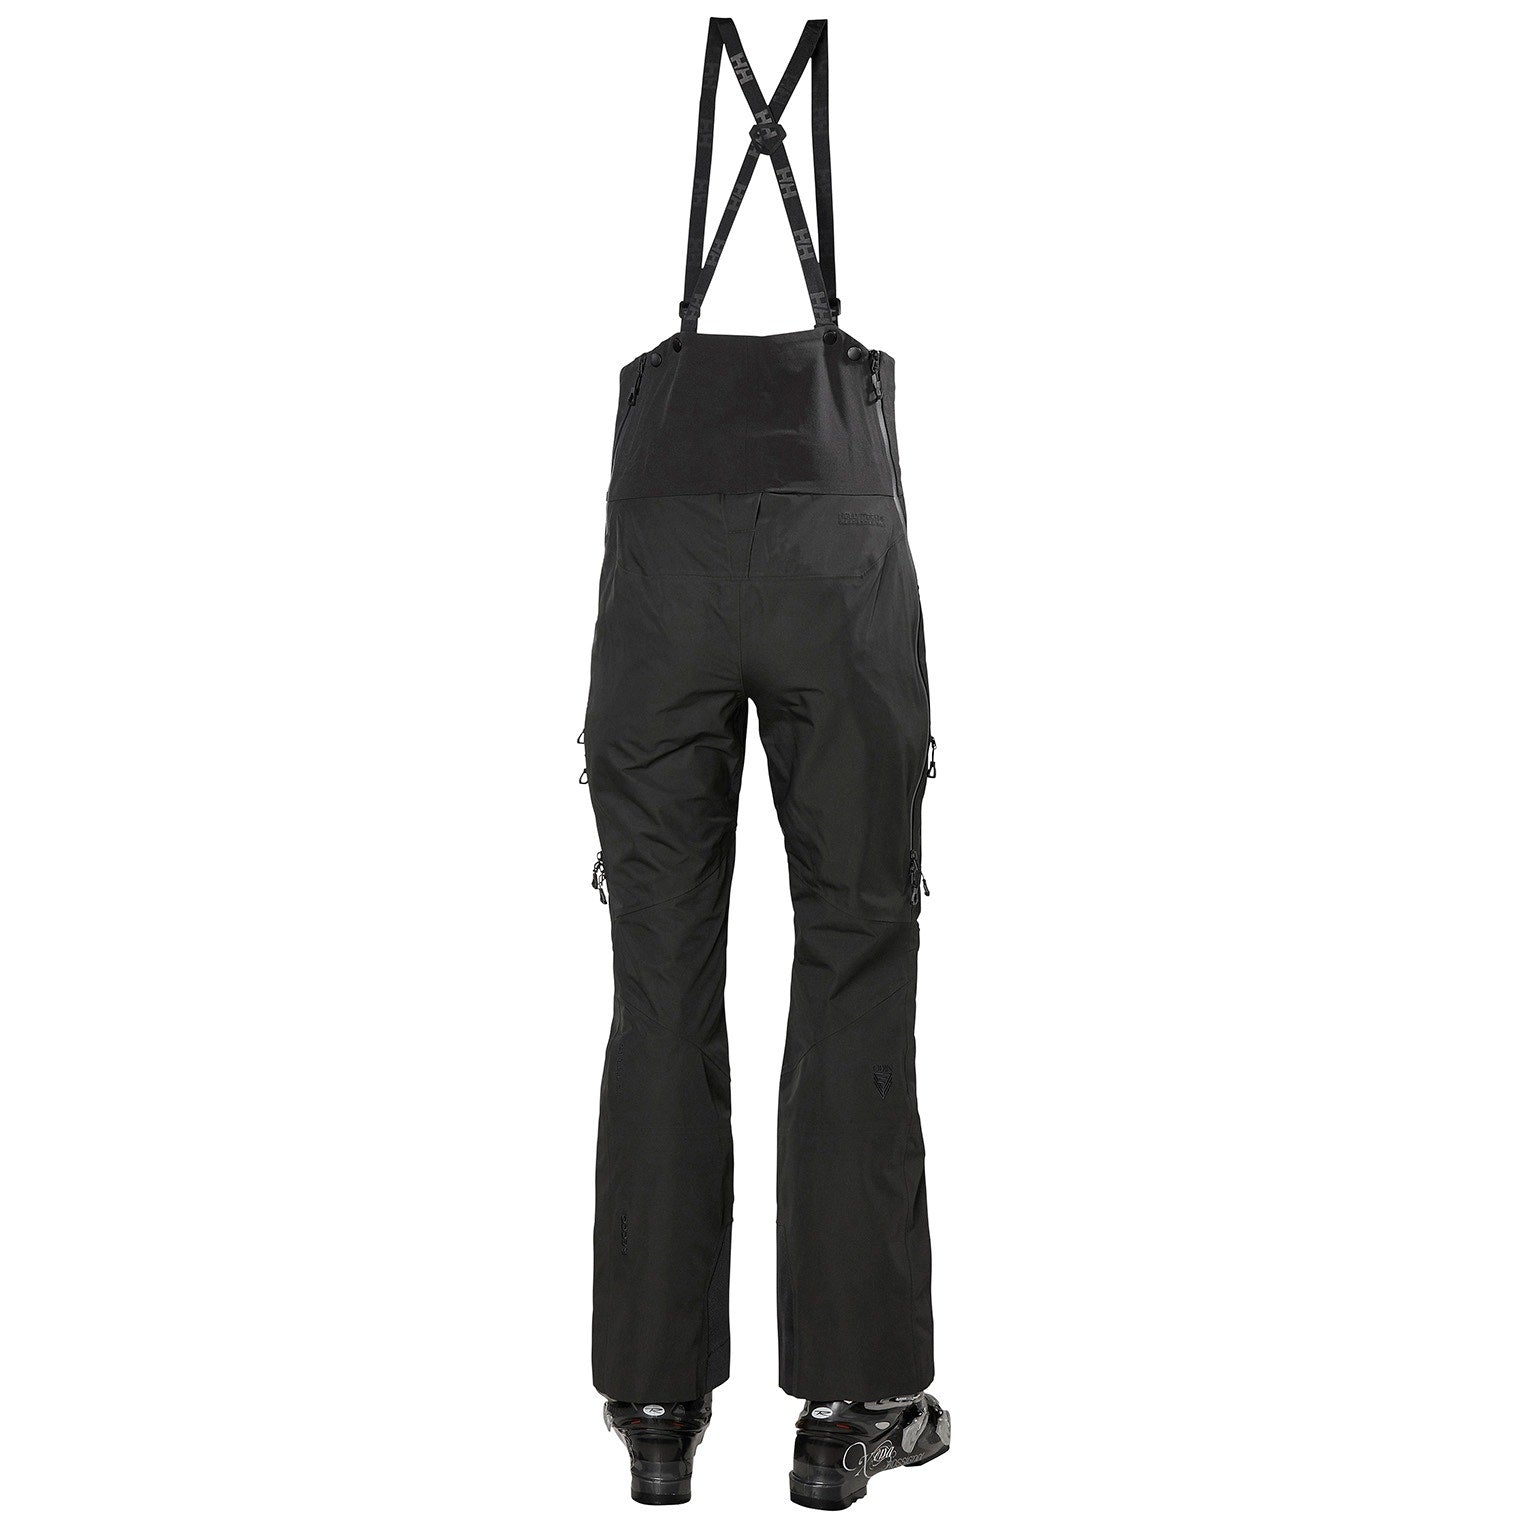 Pantalons de Ski Odin Mountain Infinity 3L pour Femmes||Odin Mountain Infinity 3L Ski Pants for Women's